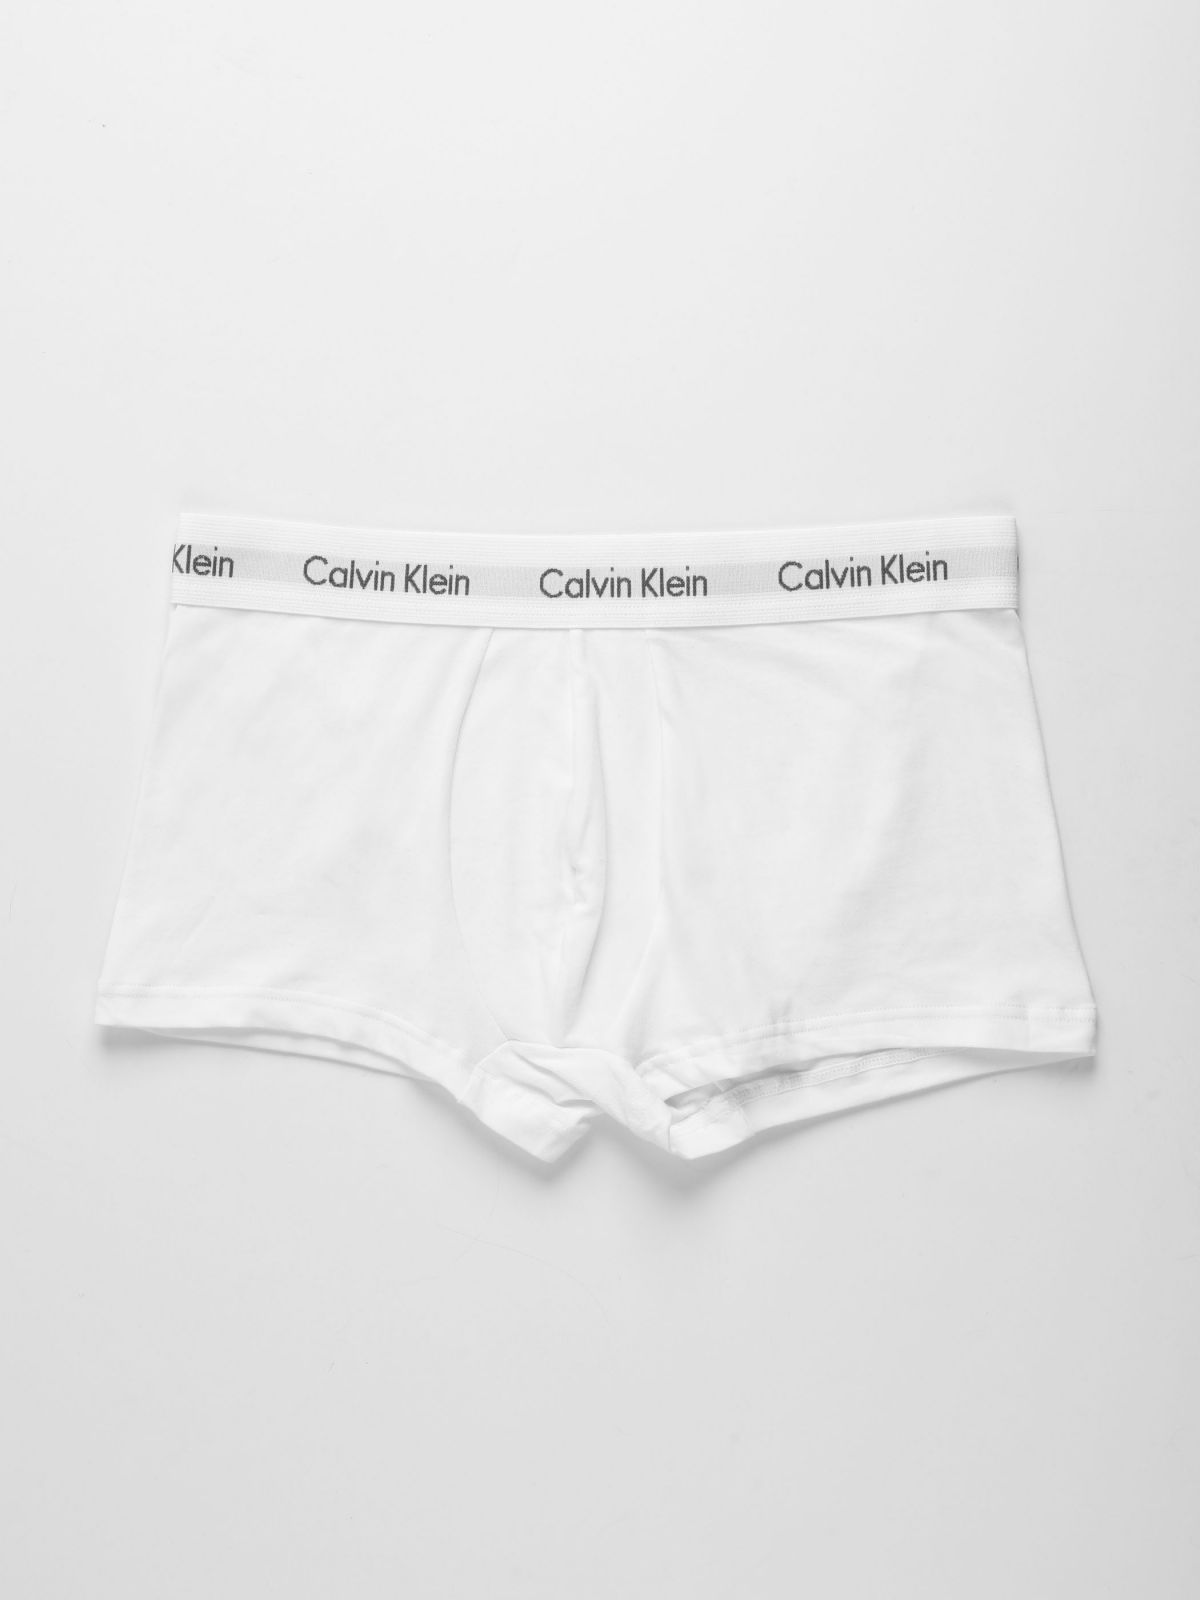  מארז 3 תחתוני בוקסר עם גומי לוגו / גברים של CALVIN KLEIN